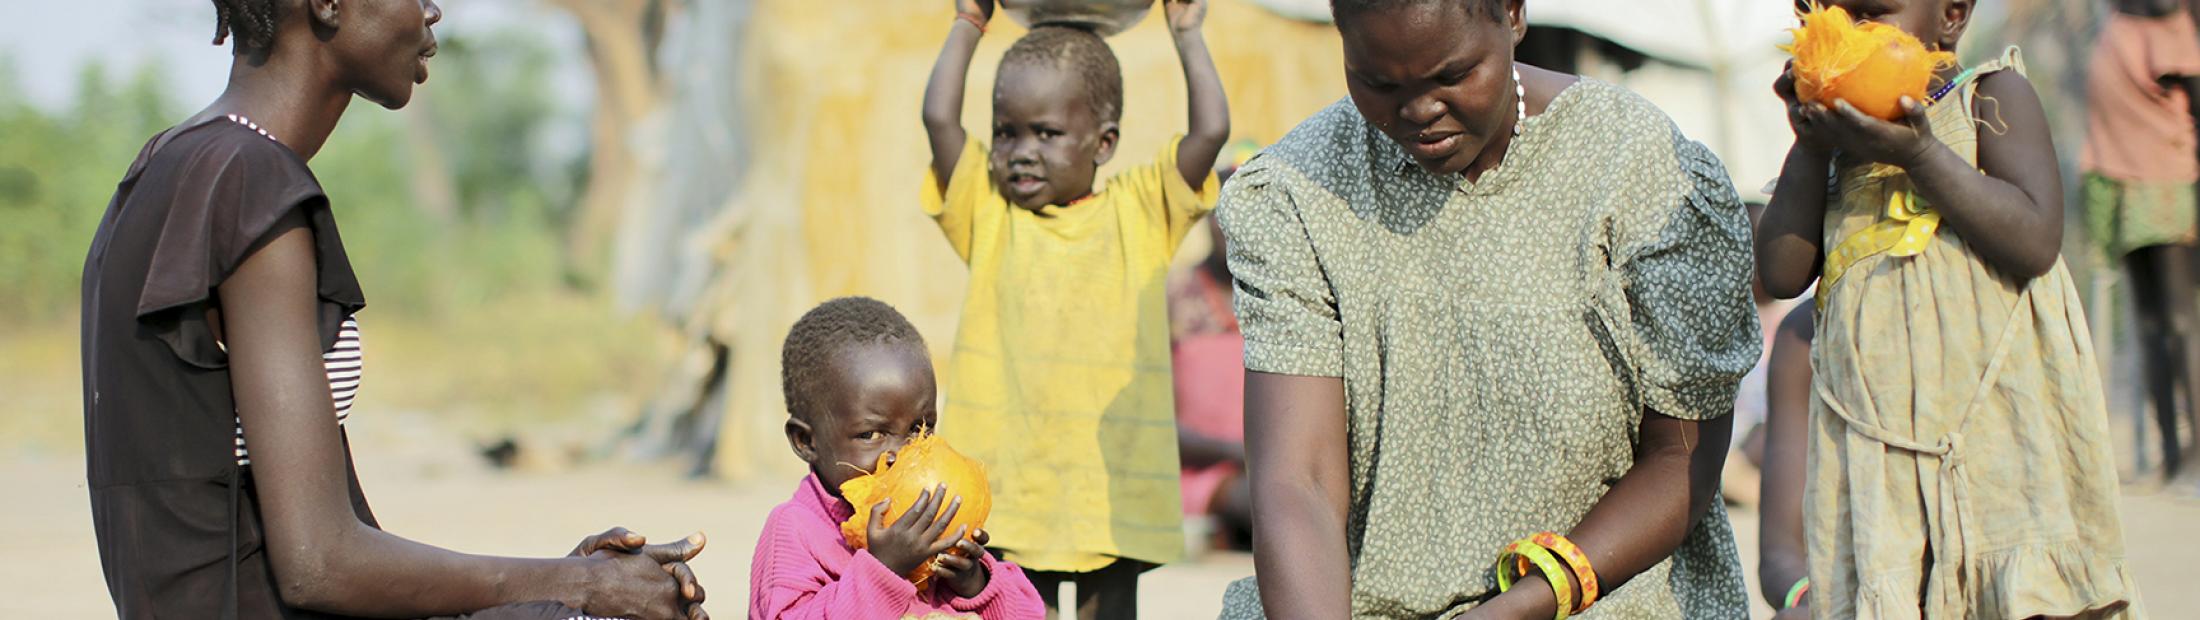 La guerra y el hambre aumentan el desplazamiento en Sudán del Sur